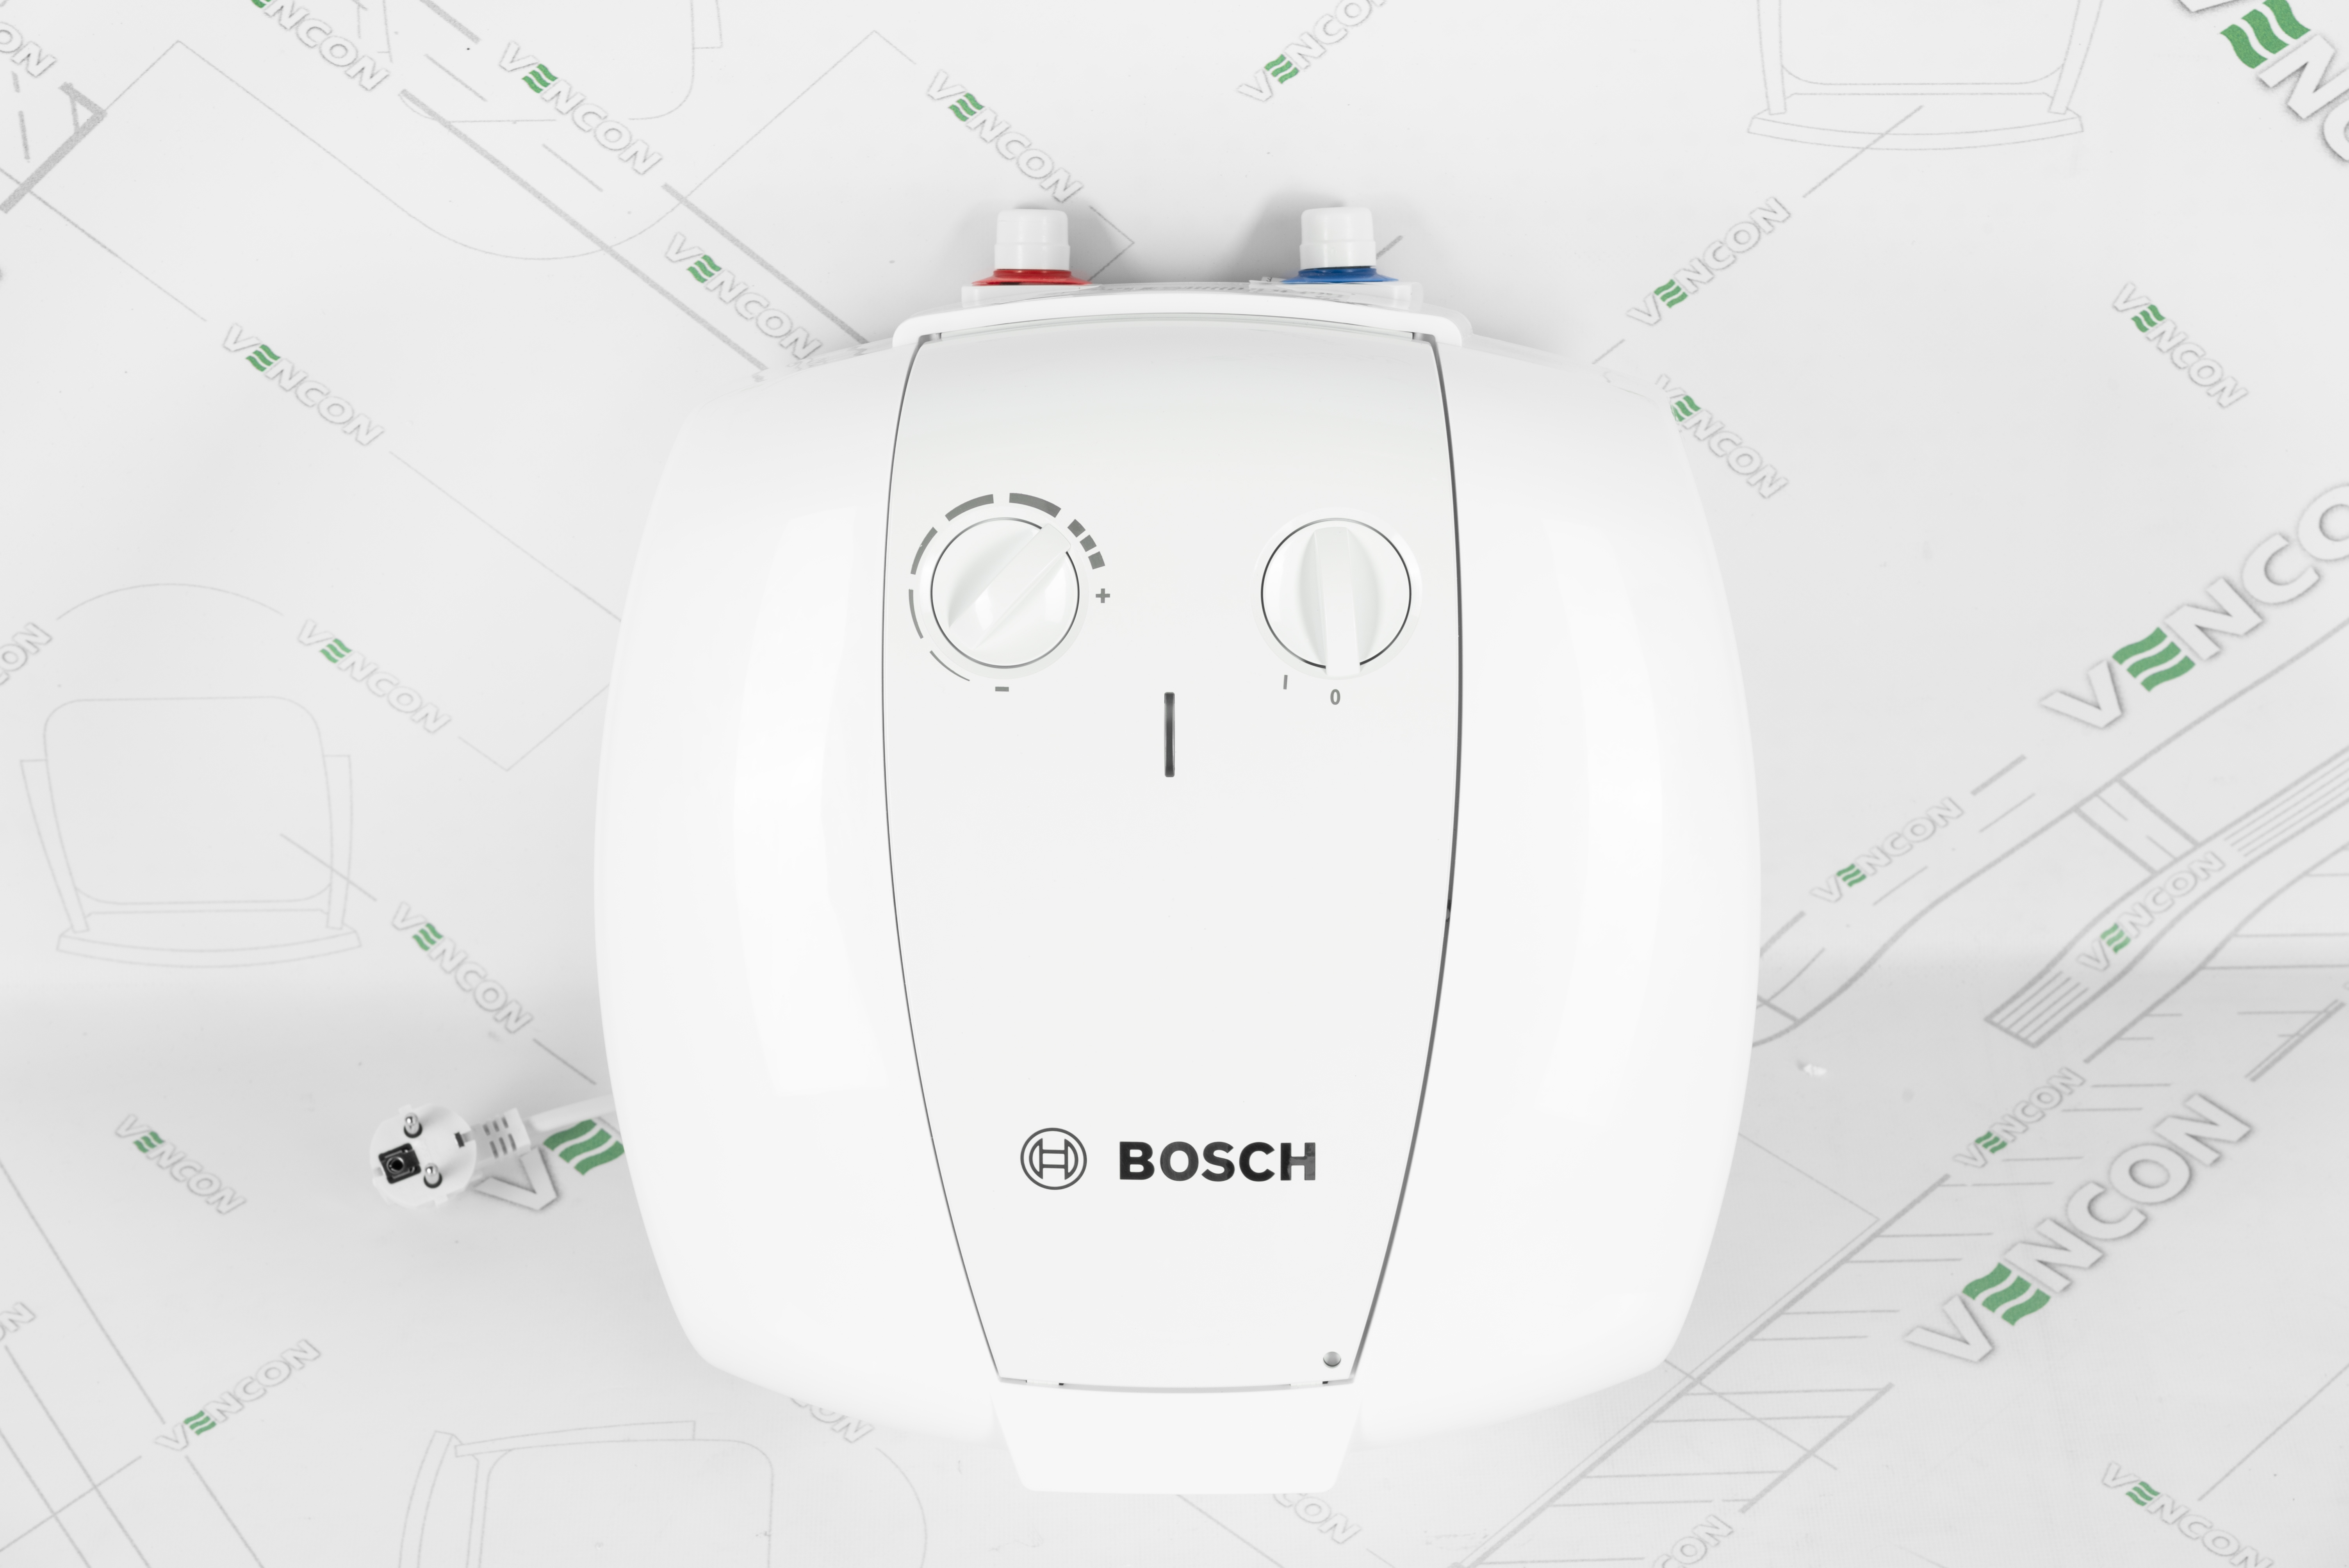 Бойлер Bosch TR 2000 T 10 T (7736504743) цена 4890.00 грн - фотография 2